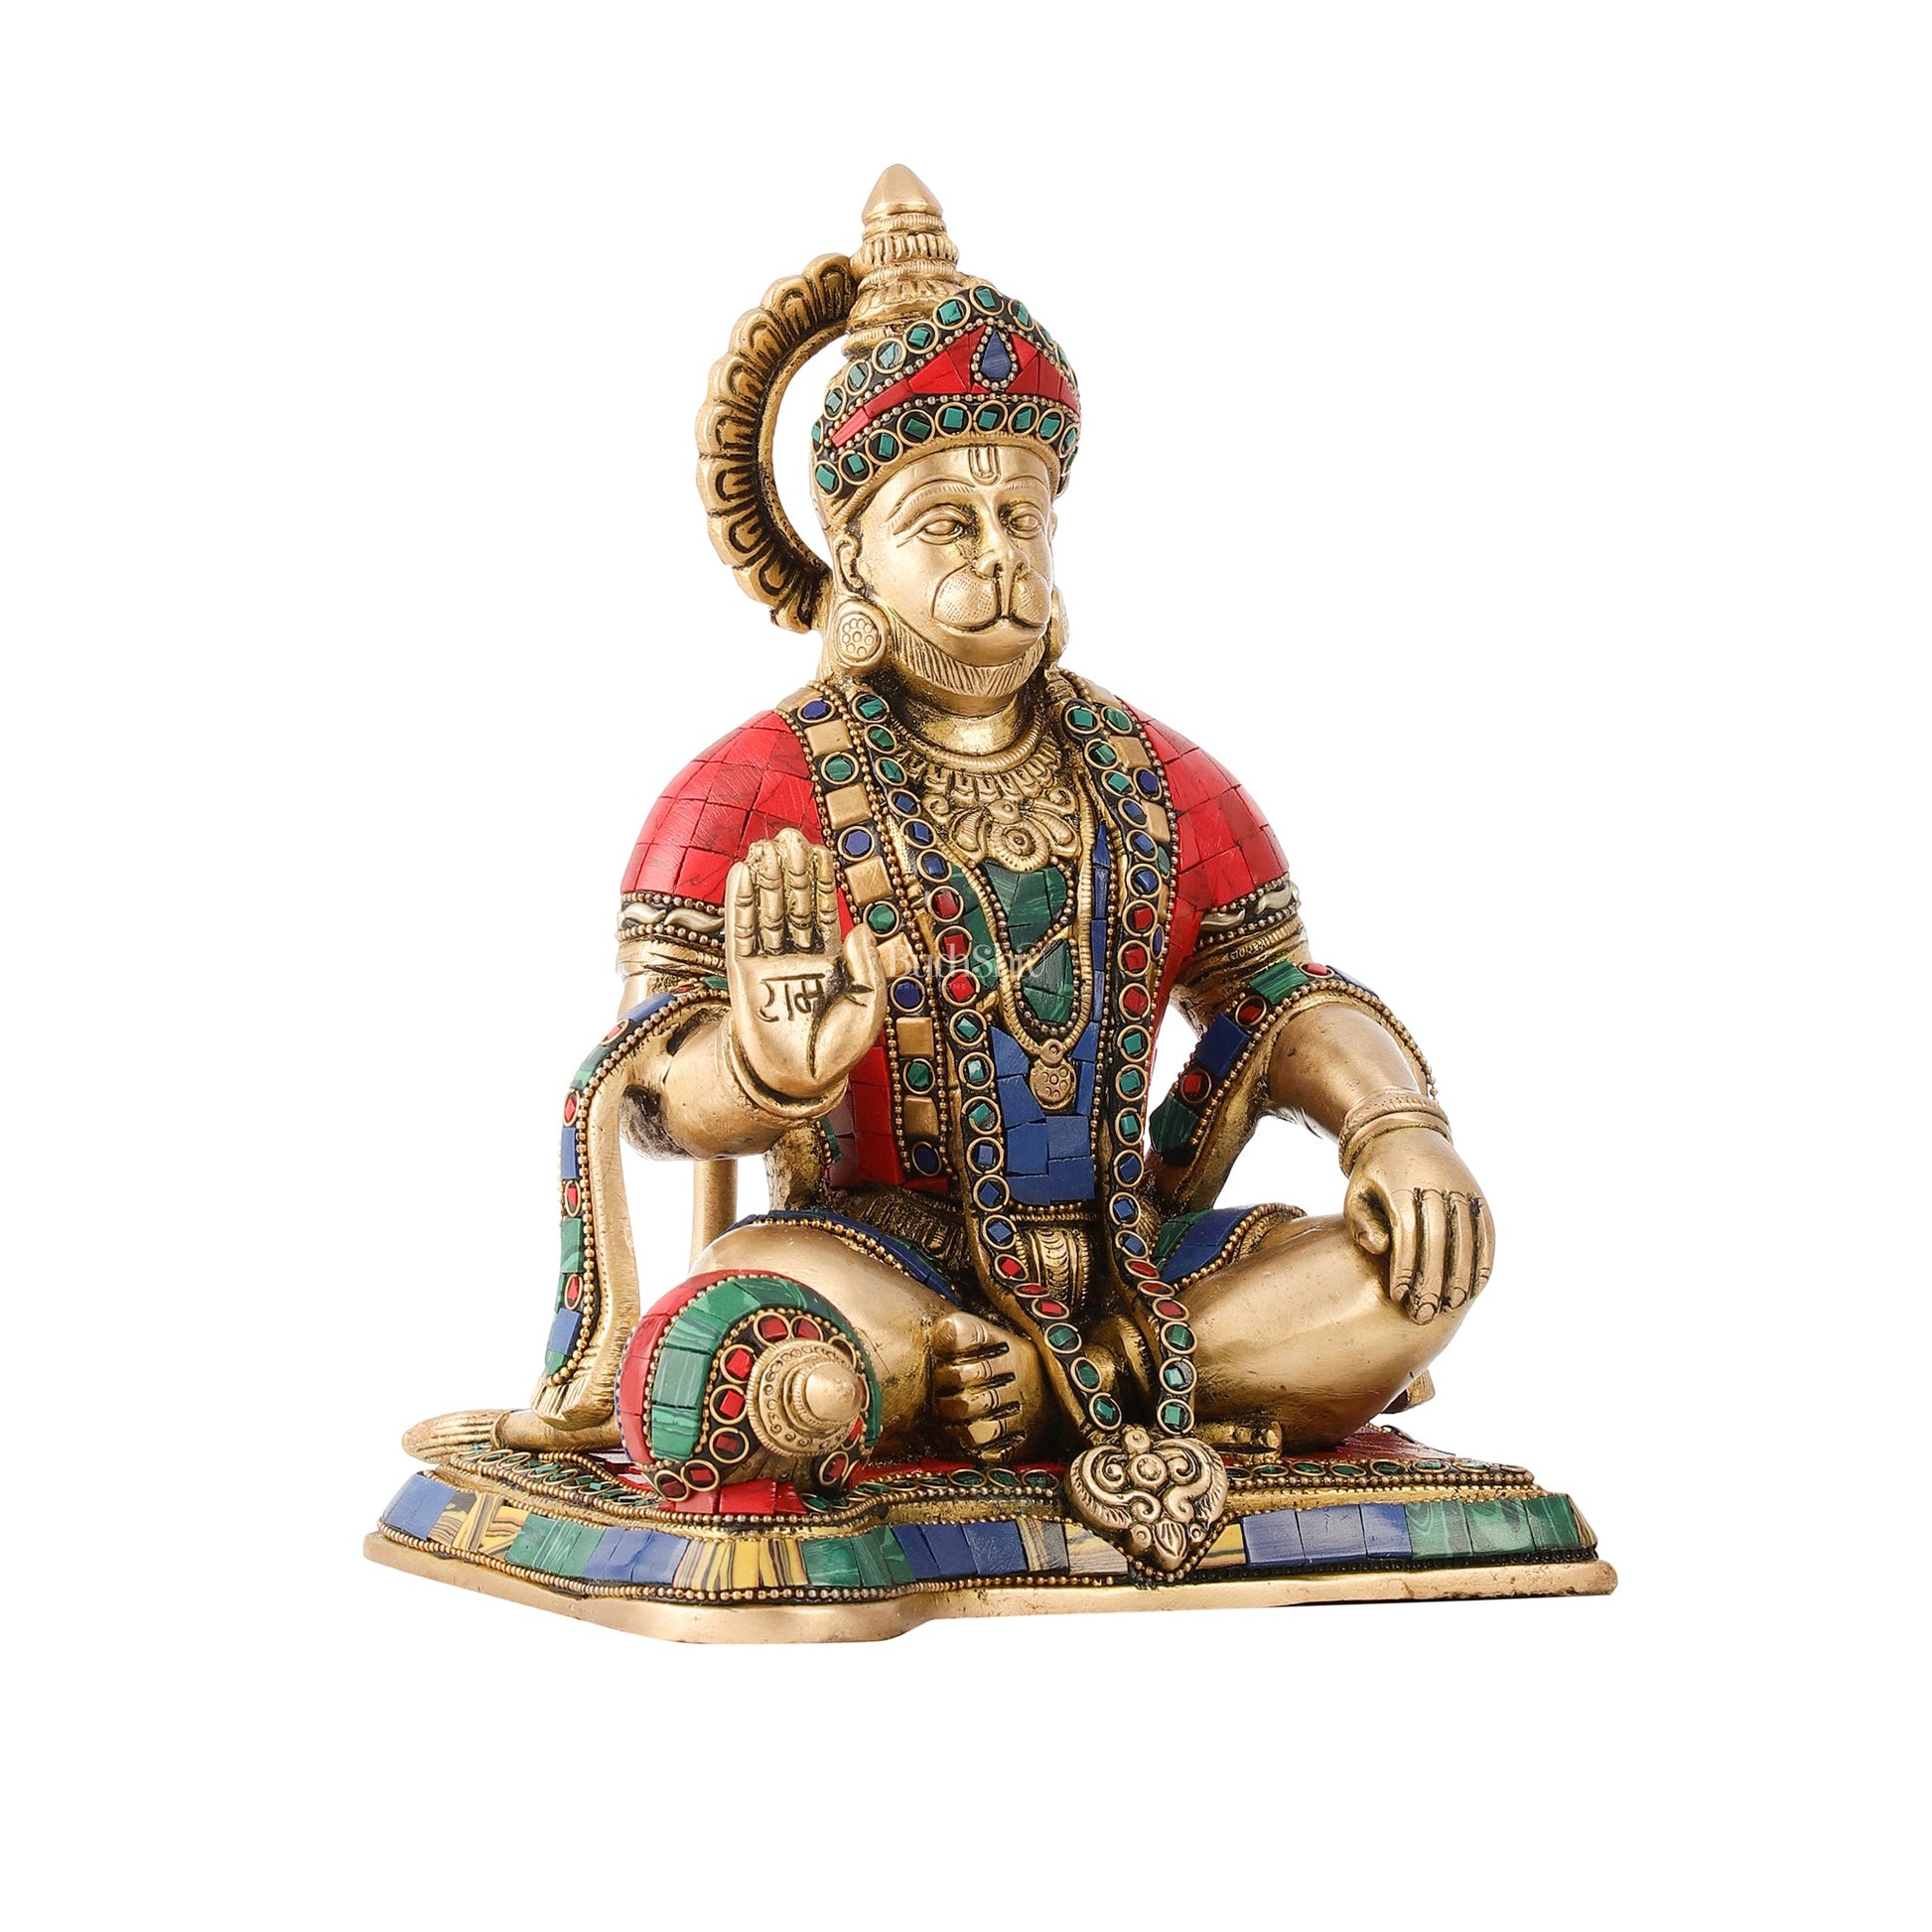 Divine Lord Hanuman Brass Idol 9.5" Tall | Meenakari Stonework - Budhshiv.com